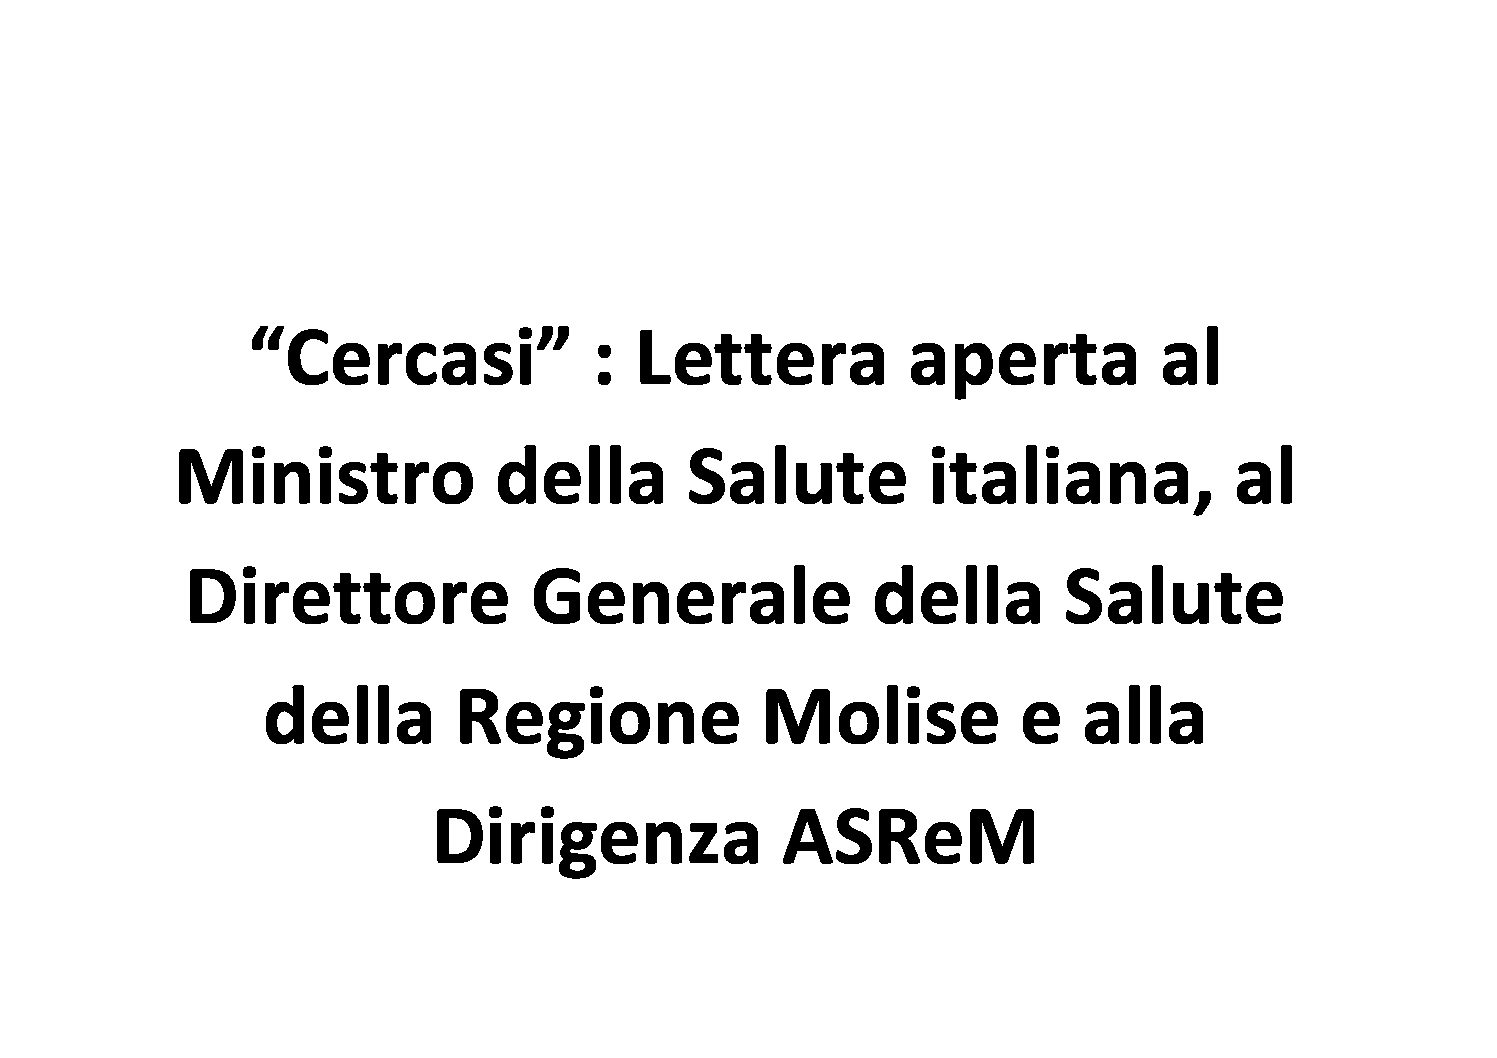 “Cercasi” : Ministro della Salute italiana, Direttore Generale della Salute della Regione Molise e Dirigenza ASReM